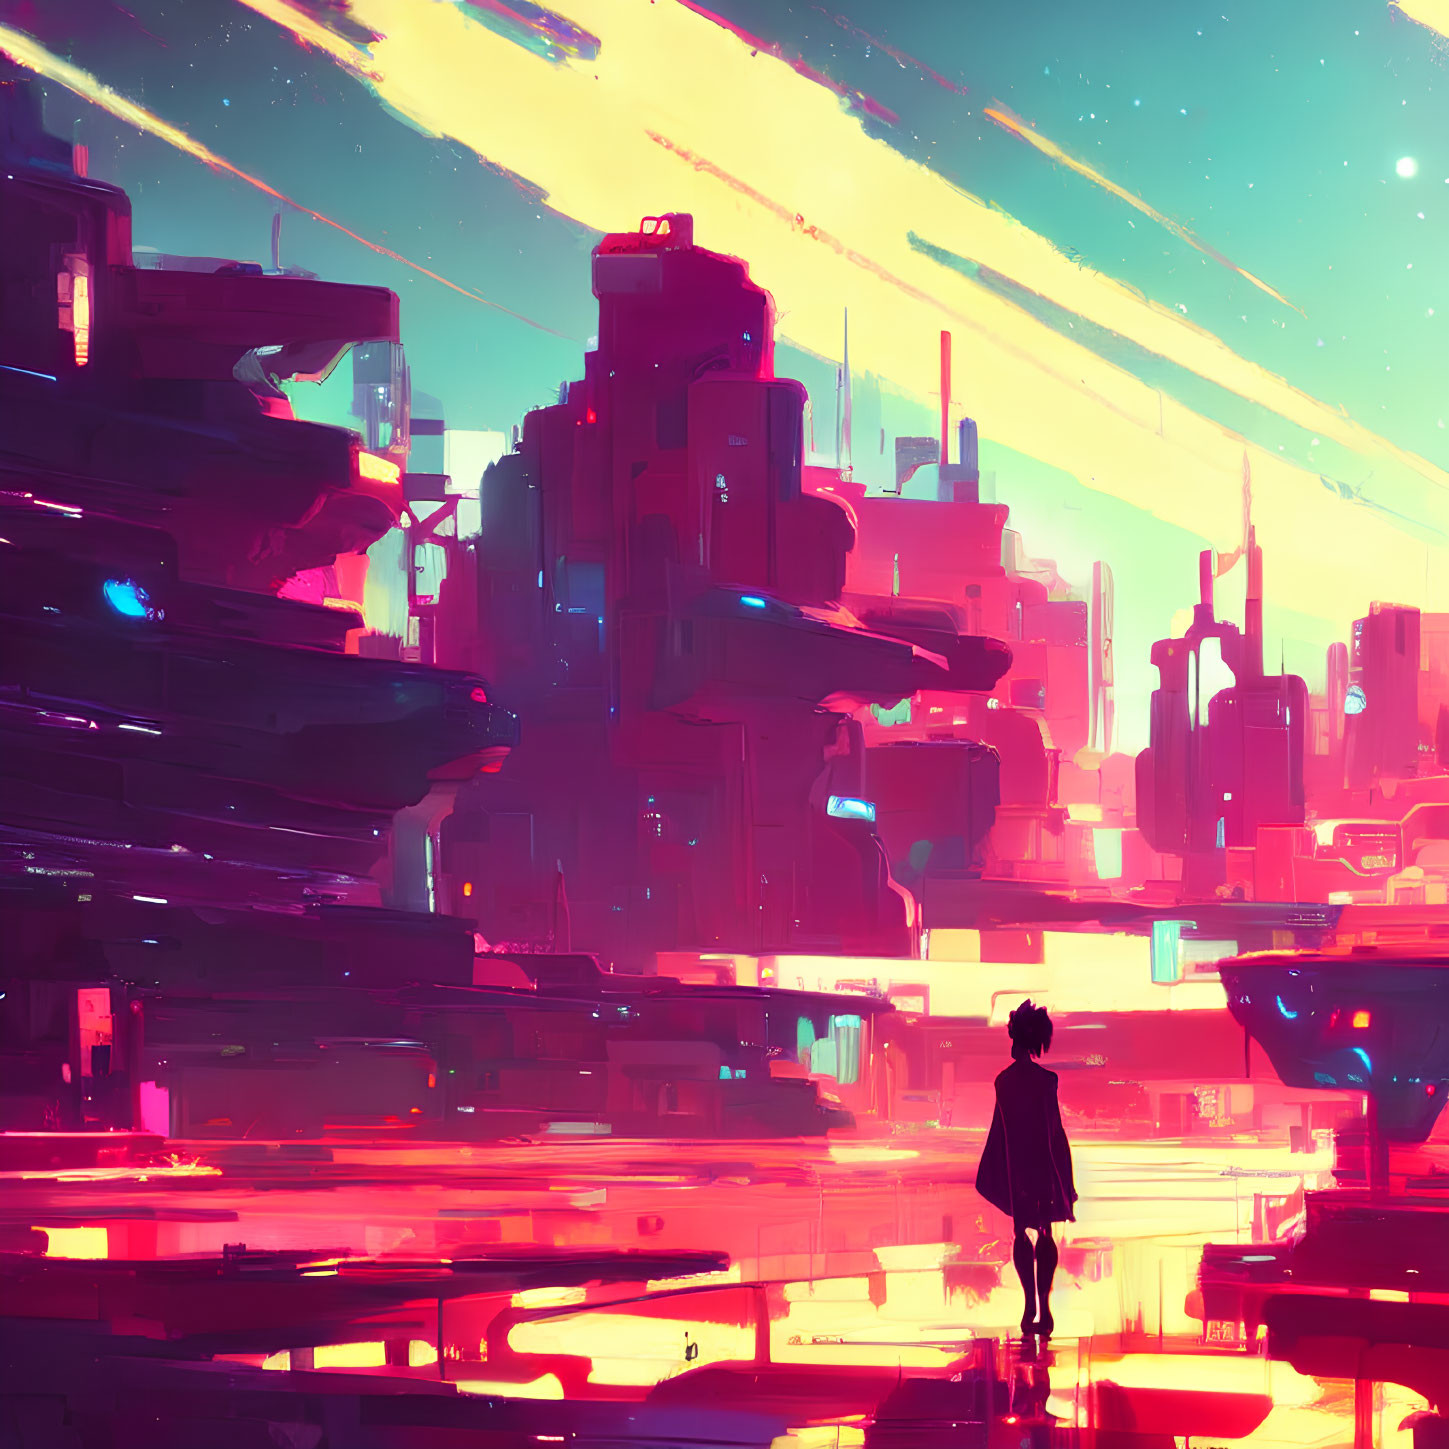 Solitary figure in front of vibrant neon-lit futuristic cityscape